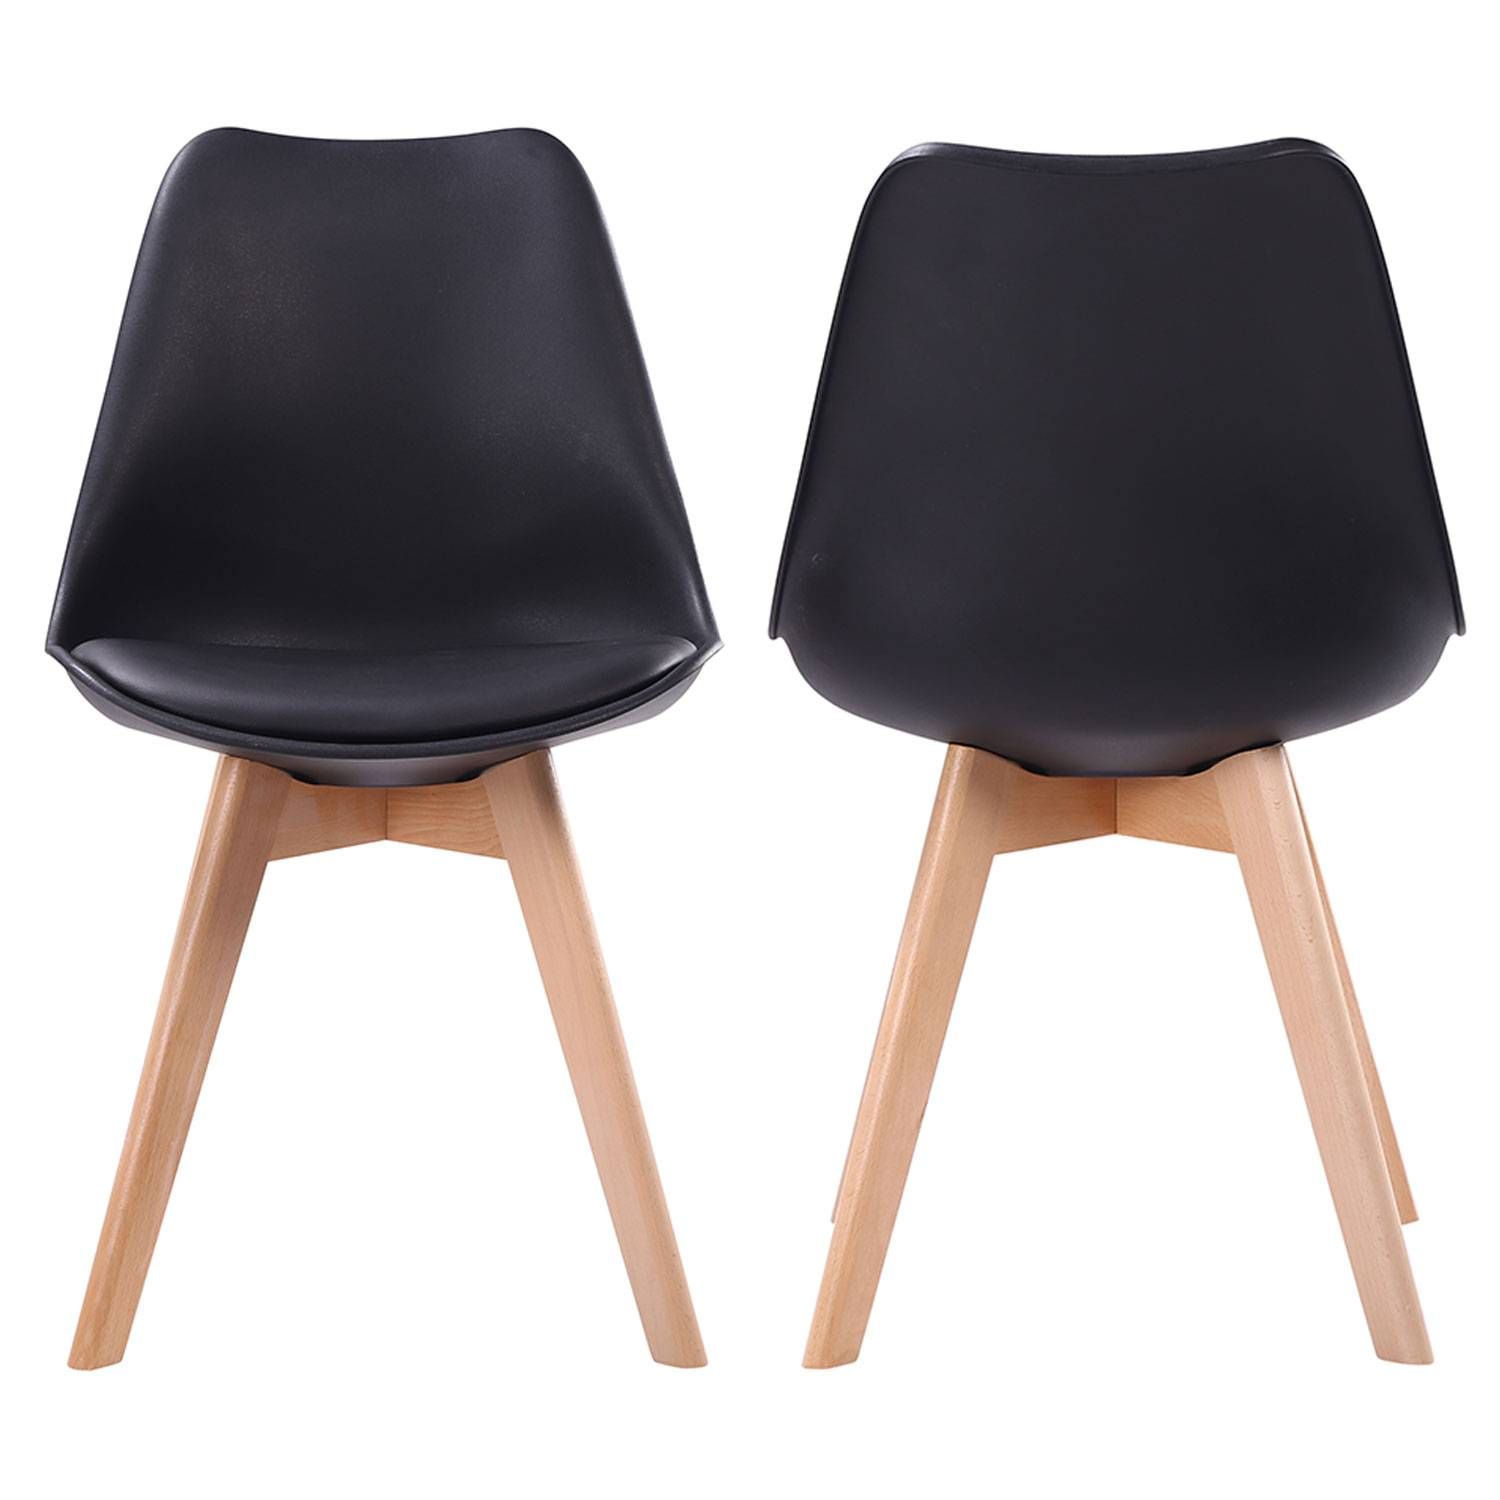 4 sillas de estilo nórdico en color negro con cojín por 129 euros